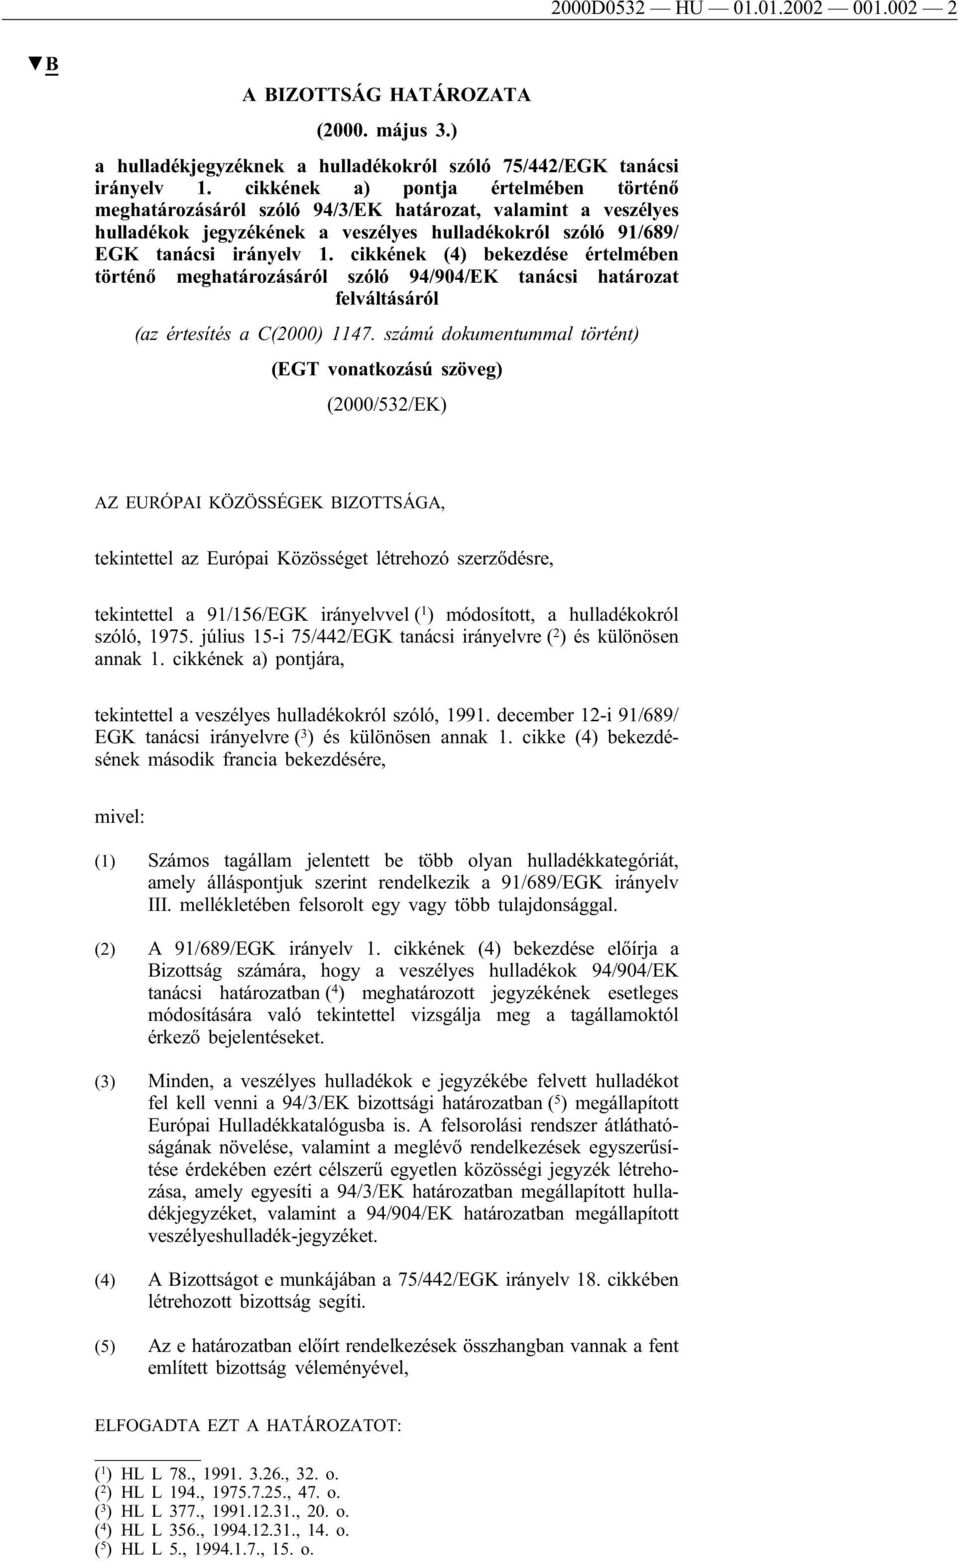 cikkének (4) bekezdése értelmében történő meghatározásáról szóló 94/904/EK tanácsi határozat felváltásáról (az értesítés a C(2000) 1147.